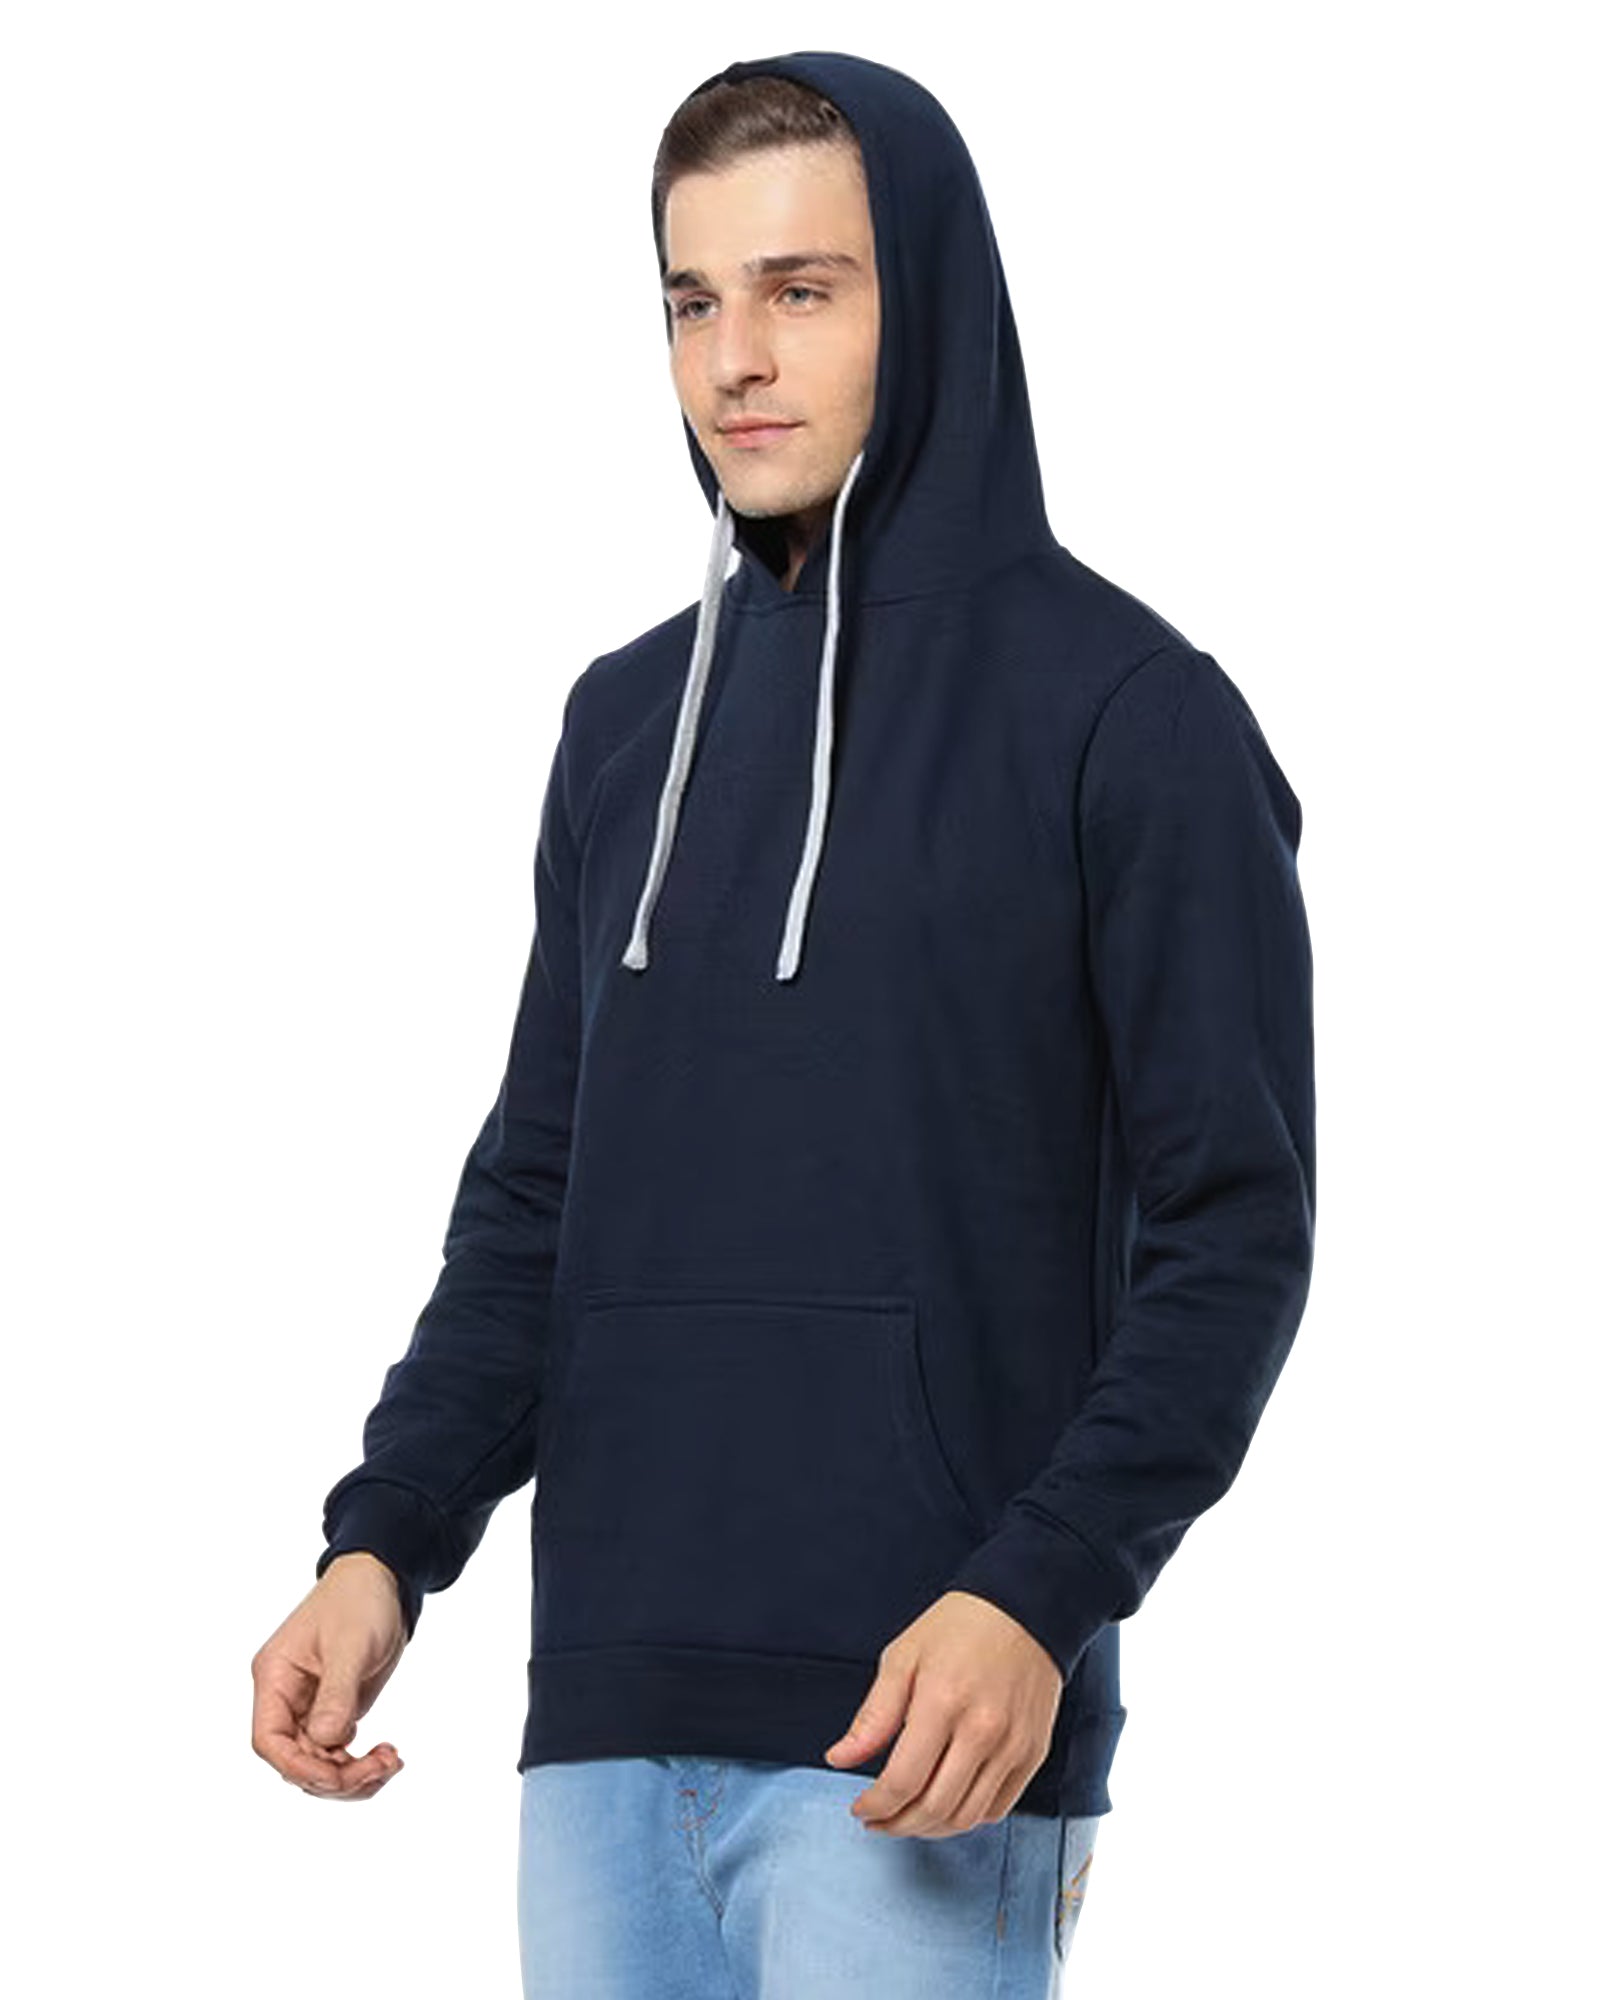 Men's Solid Hoodie Sweatshirt with Pockets